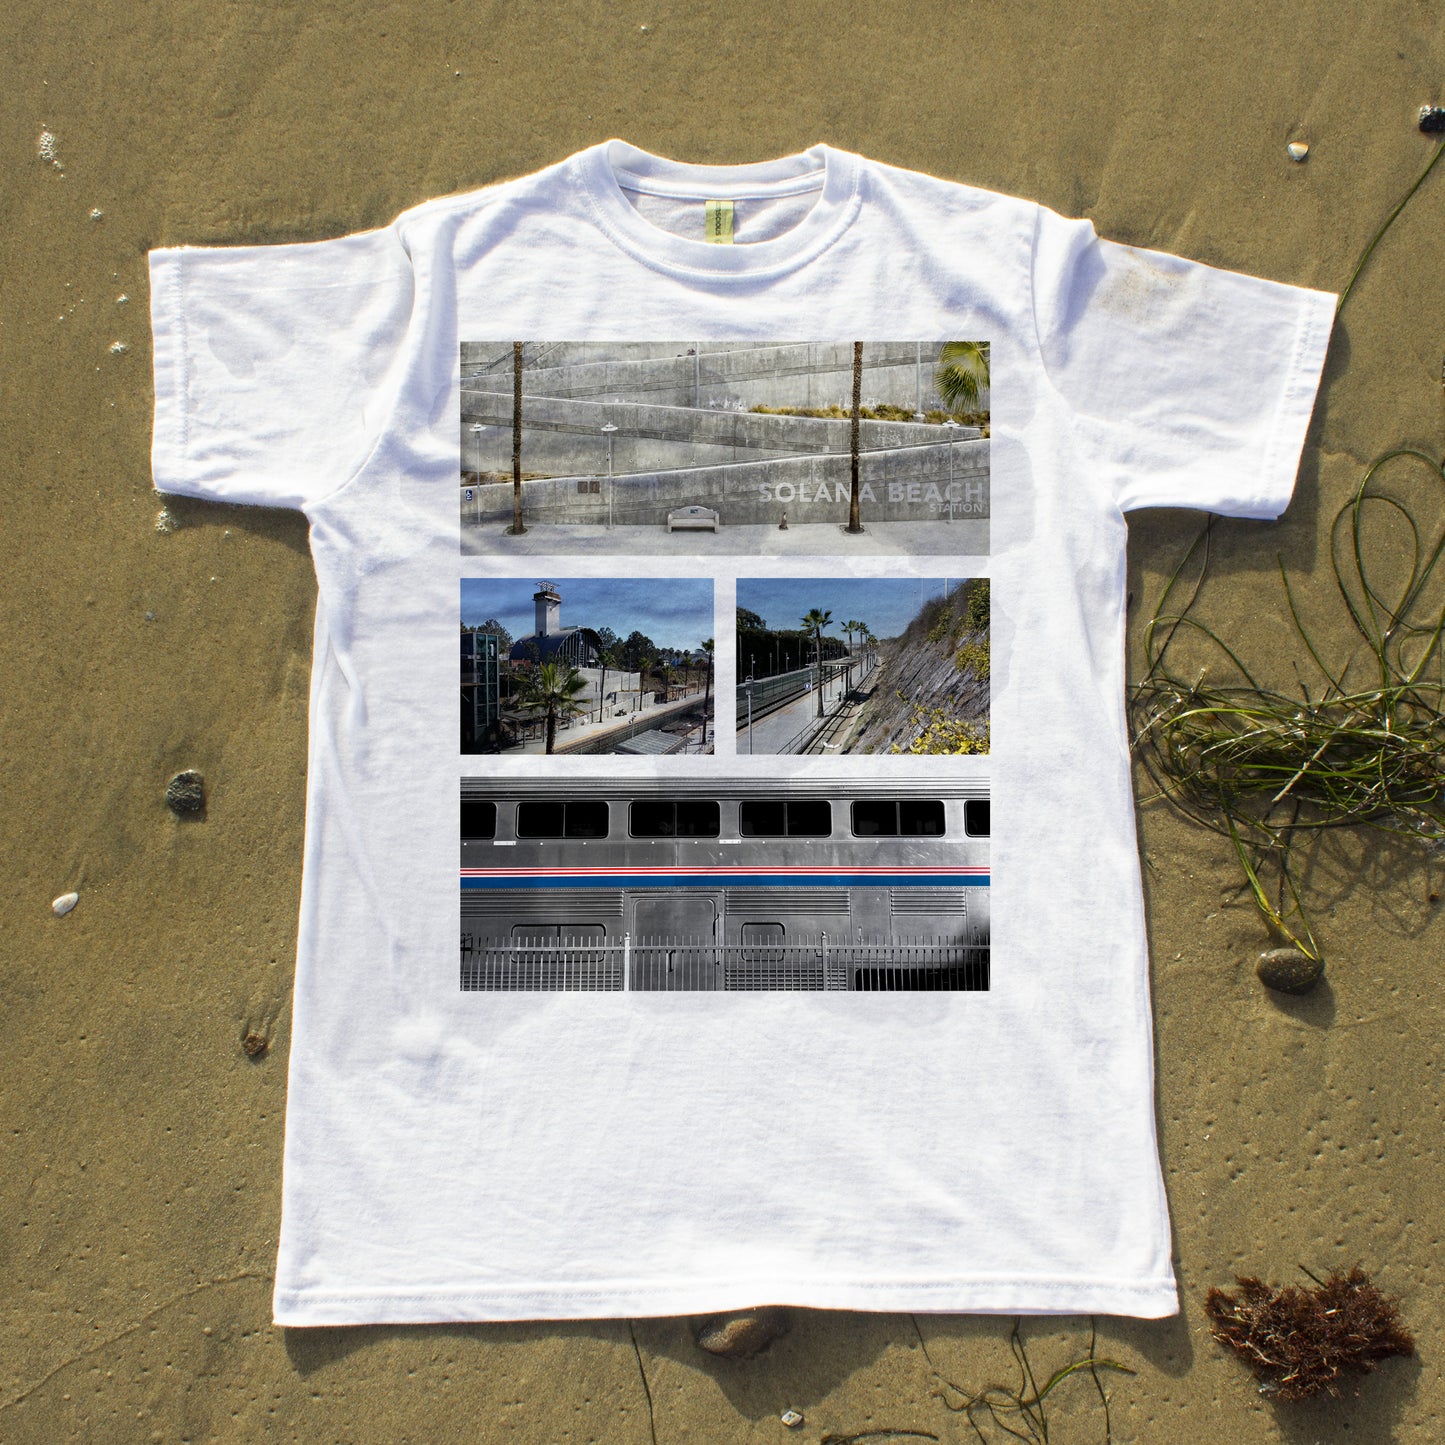 Le t-shirt bio Solana Beach Station